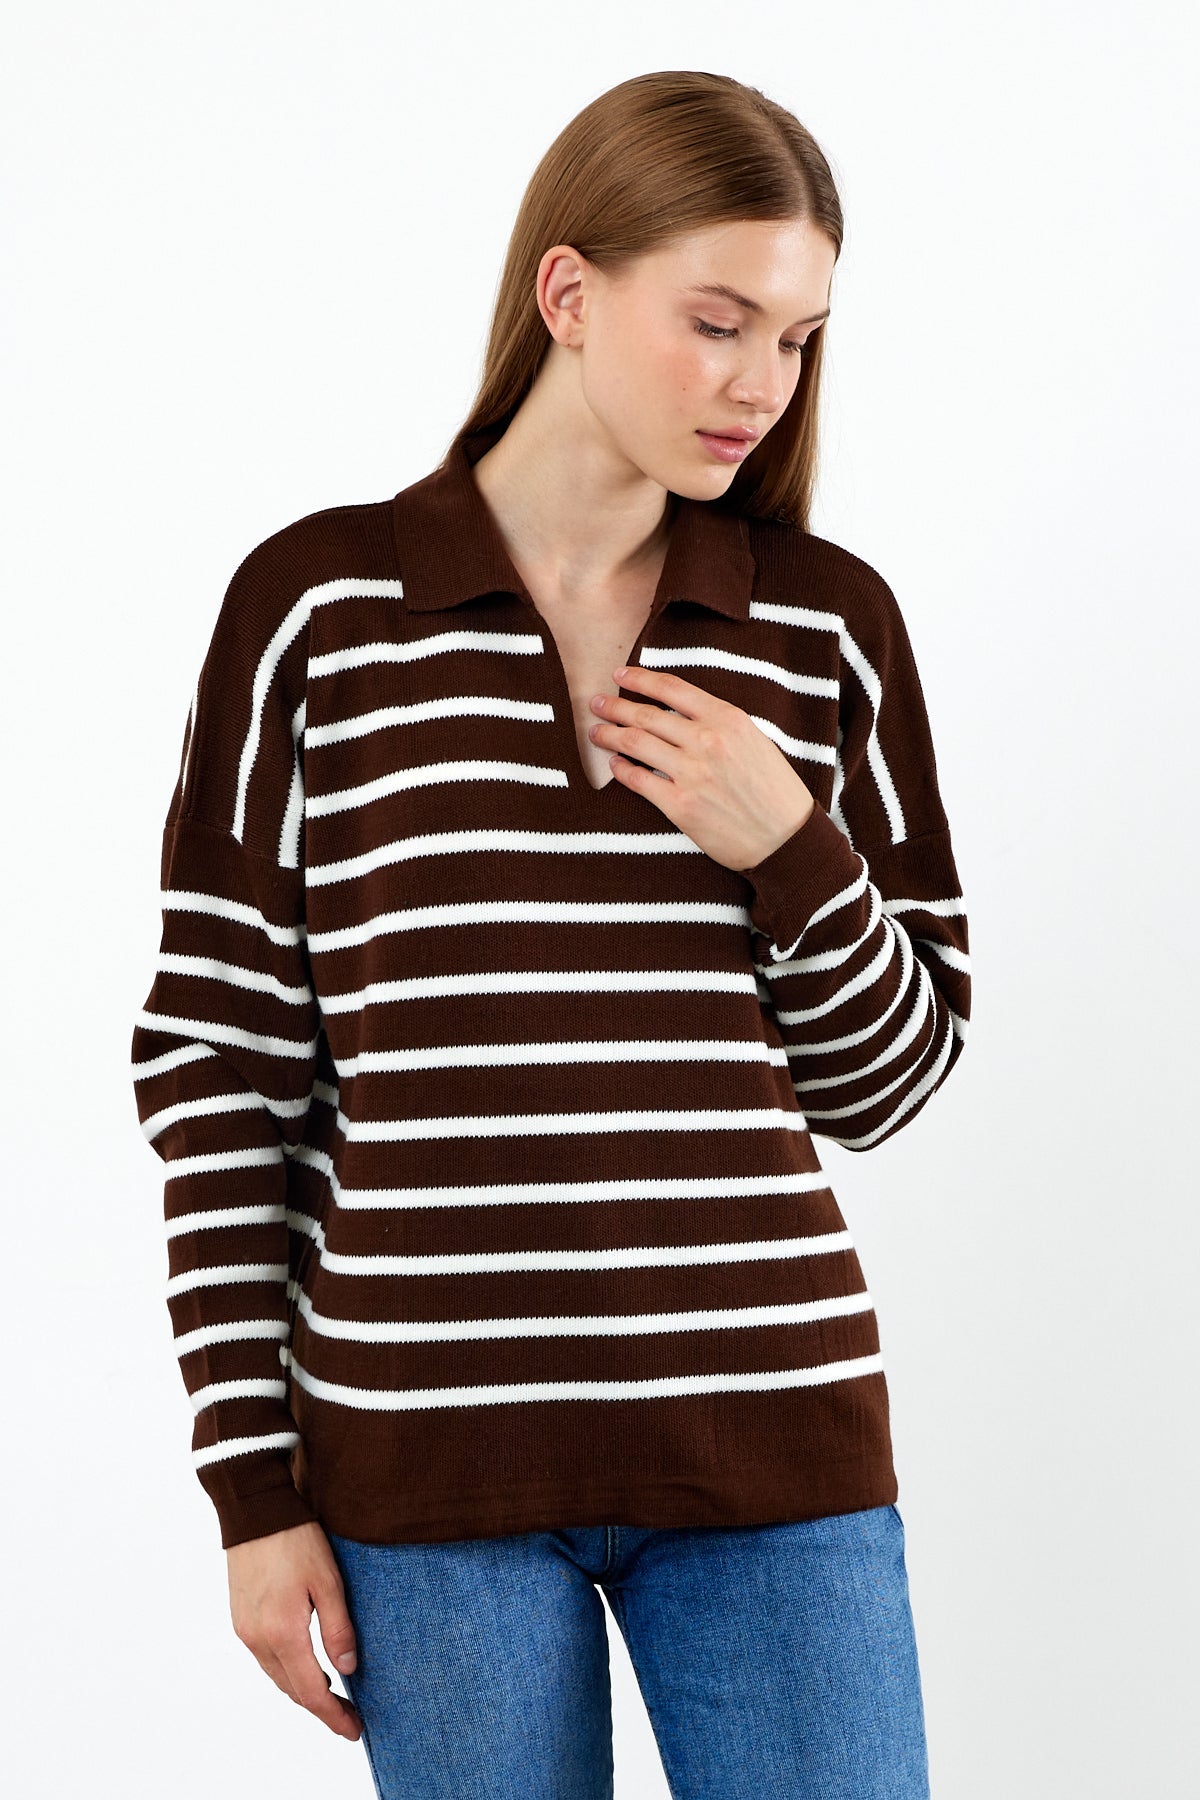 Knit Polo Neck Top V Neck Striped Knit Sweater - SKU: 1038